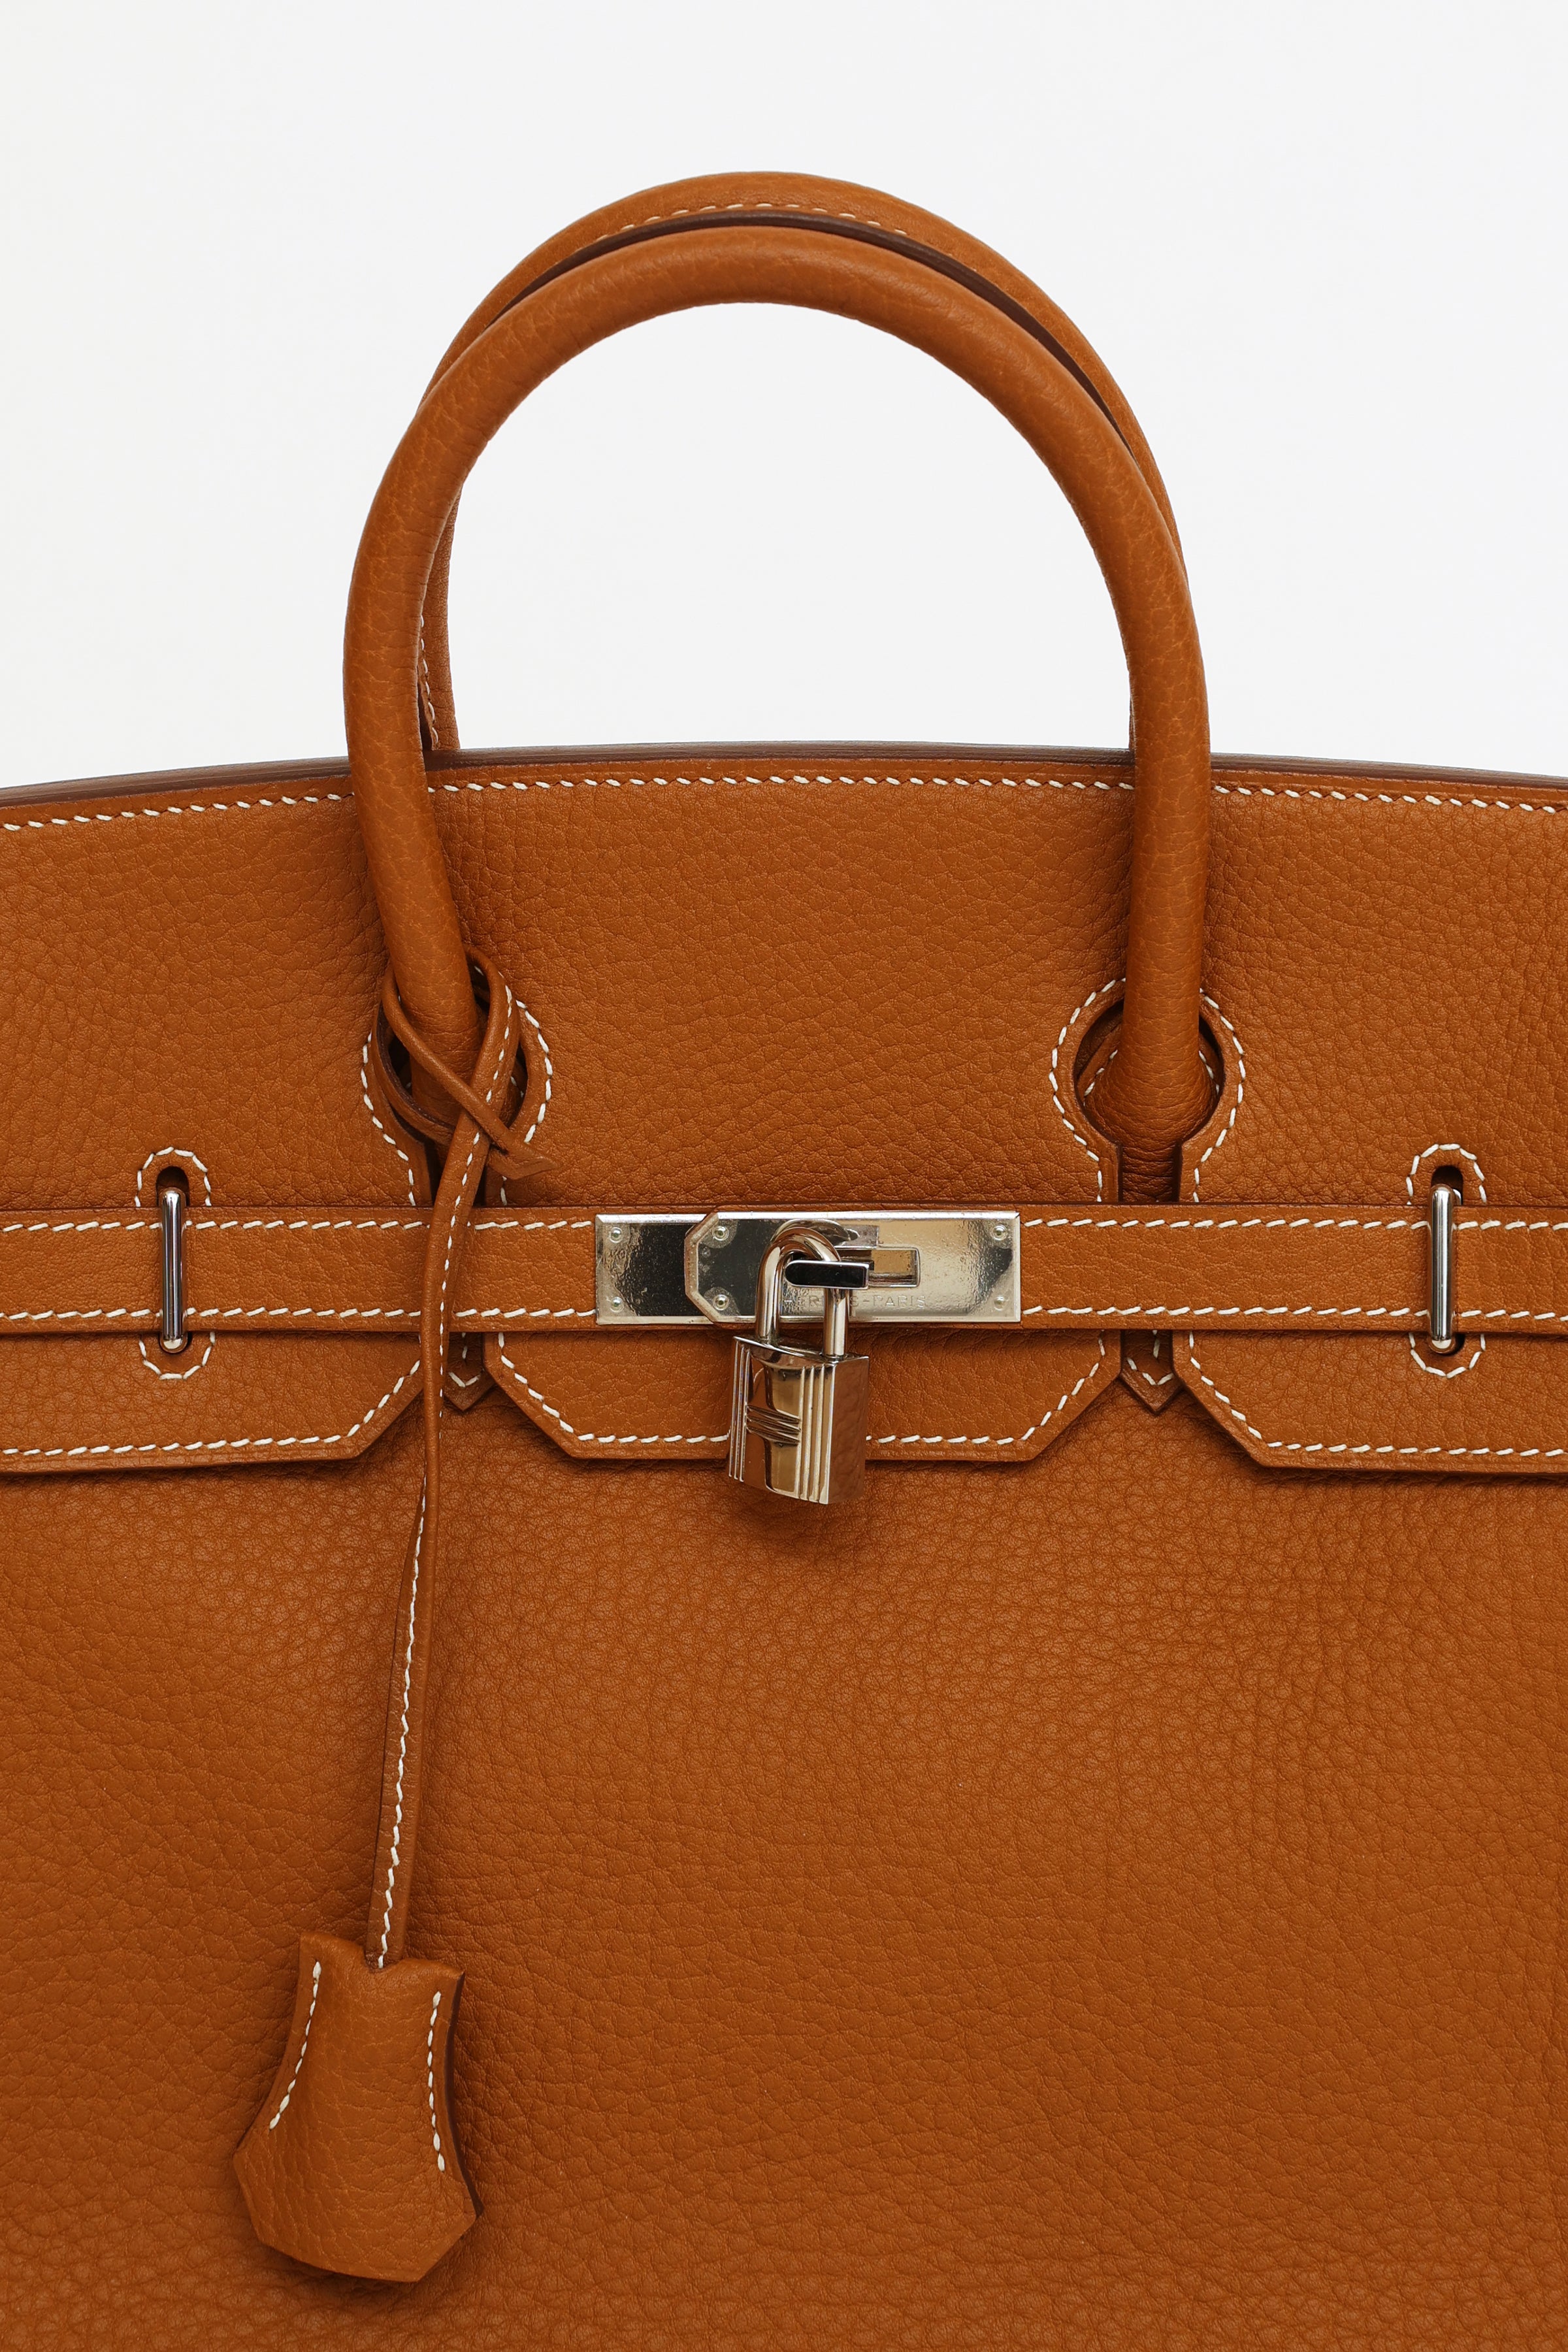 Hermès // 2008 Haut à Courroies Birkin 32cm Gold Fjord Leather Bag